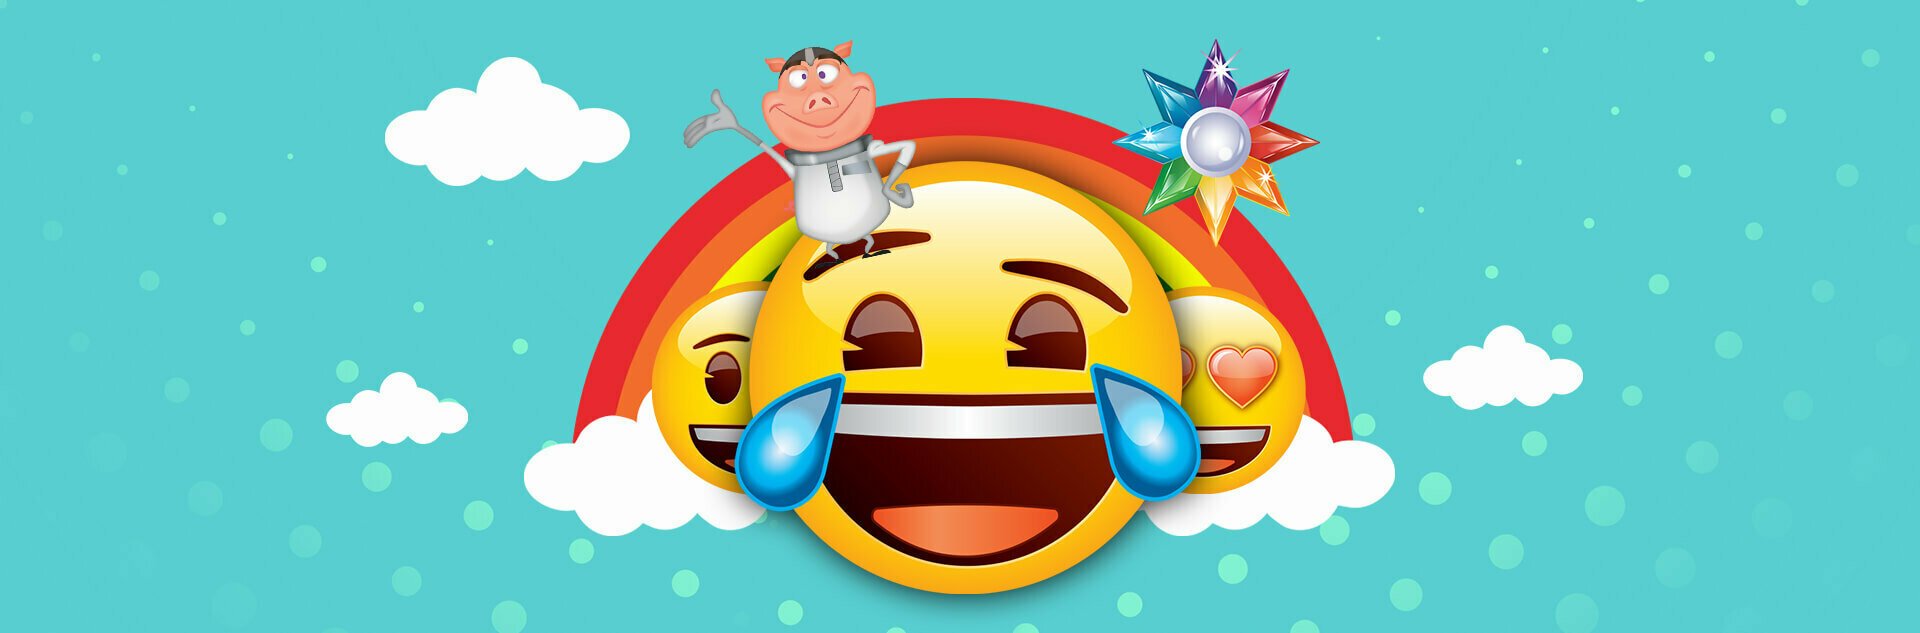 Play Emoji Planet Free Slot